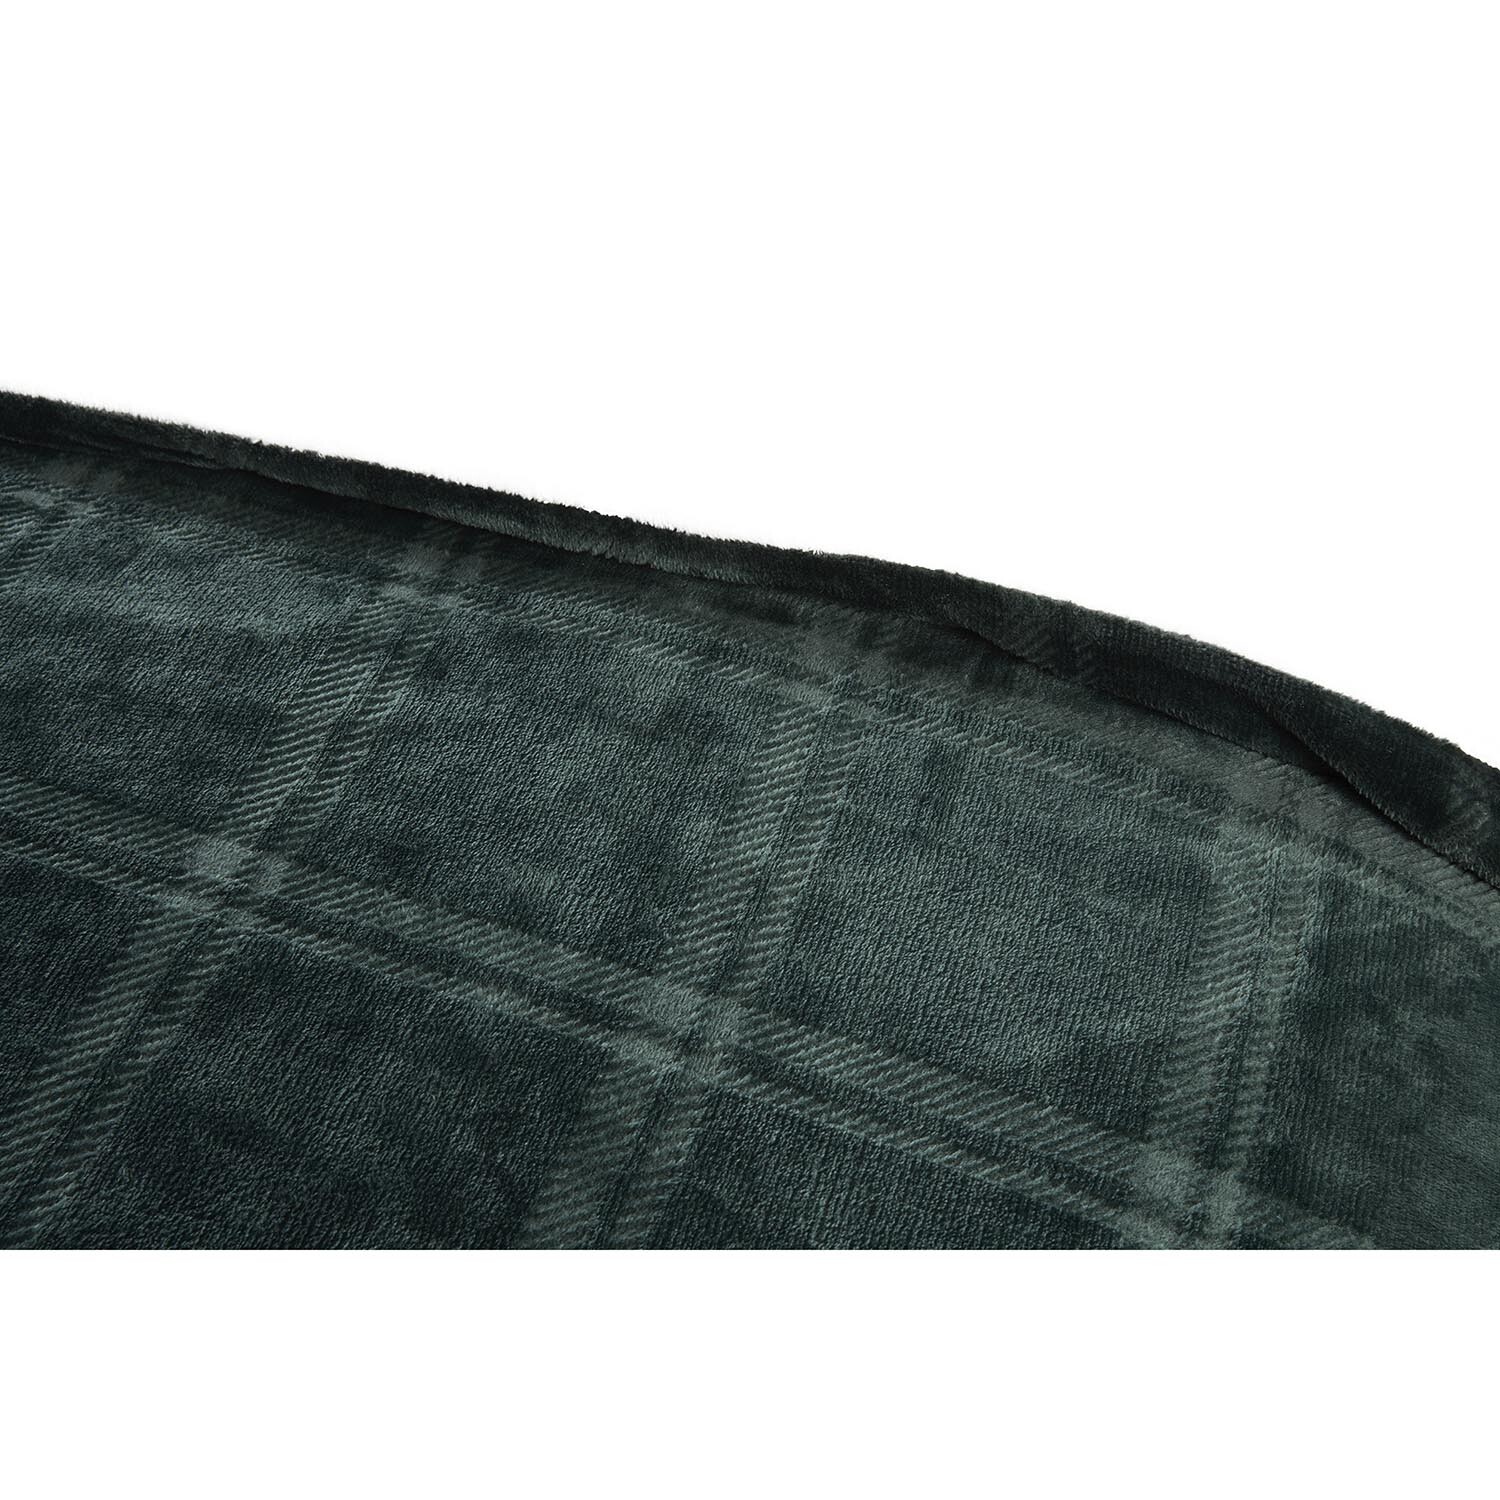 Halston King Size Green Check Fleece Duvet Cover and Pillowcase Set Image 5